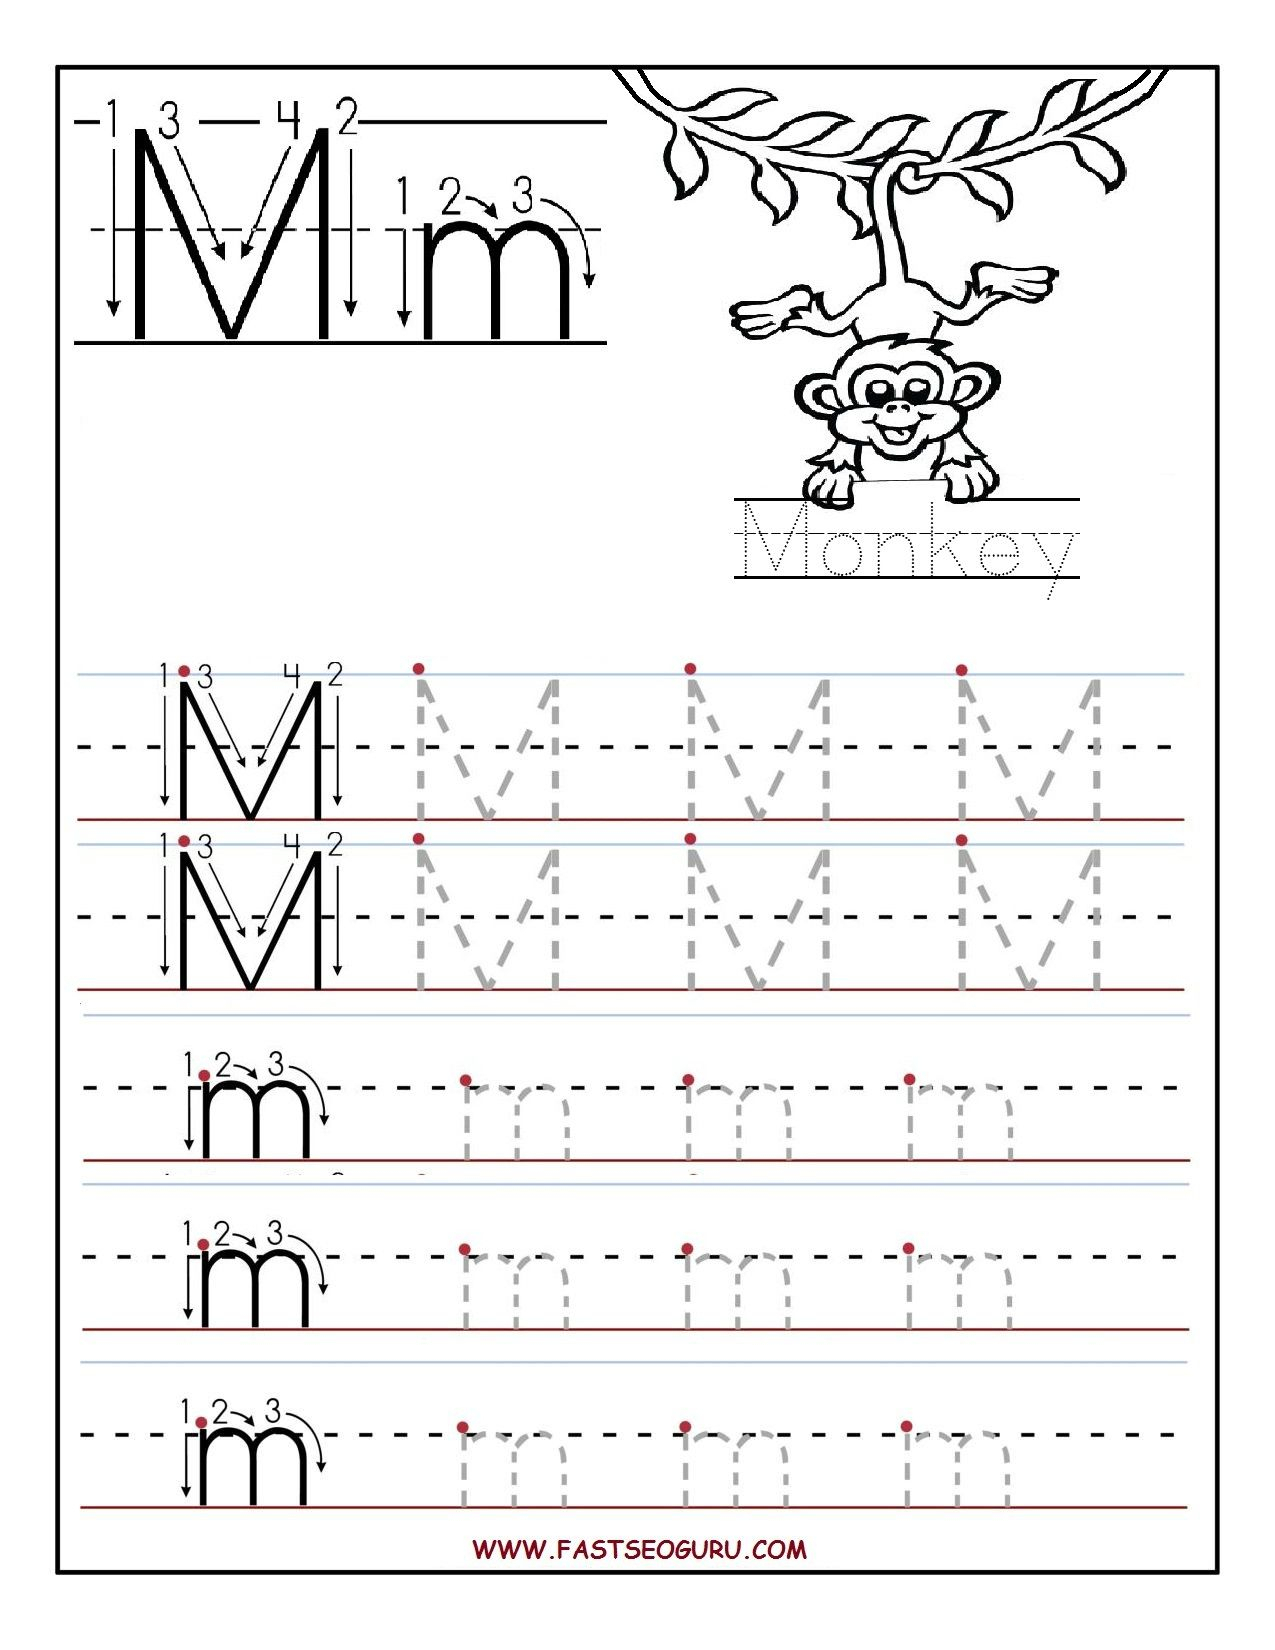 Tracing Letter M Worksheets Kindergarten | TracingLettersWorksheets.com